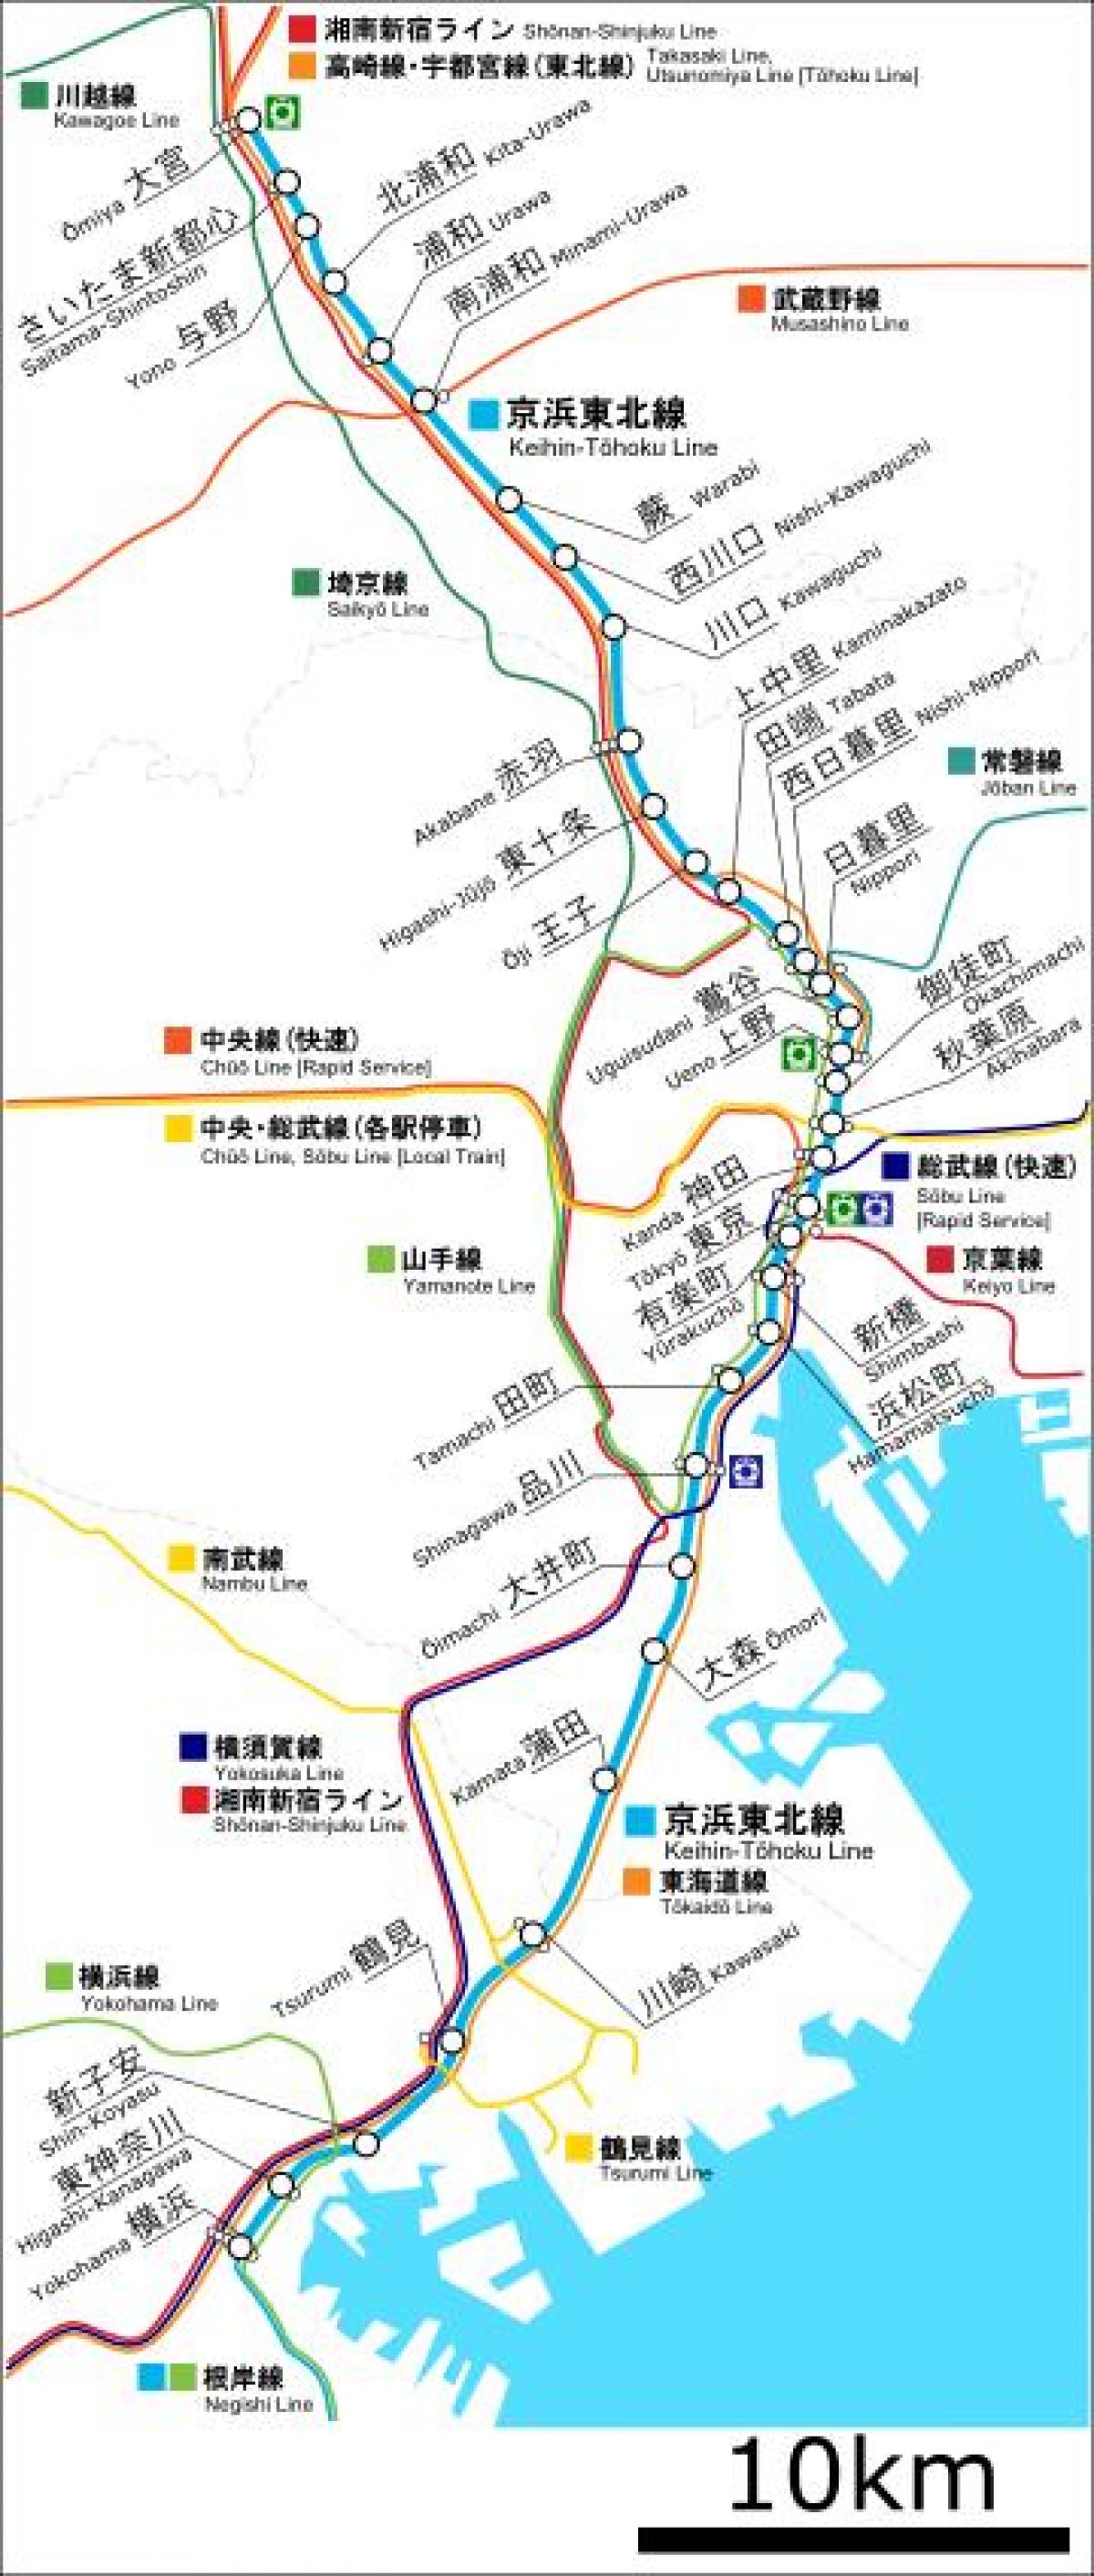 mapa da Keihin tohoku linha